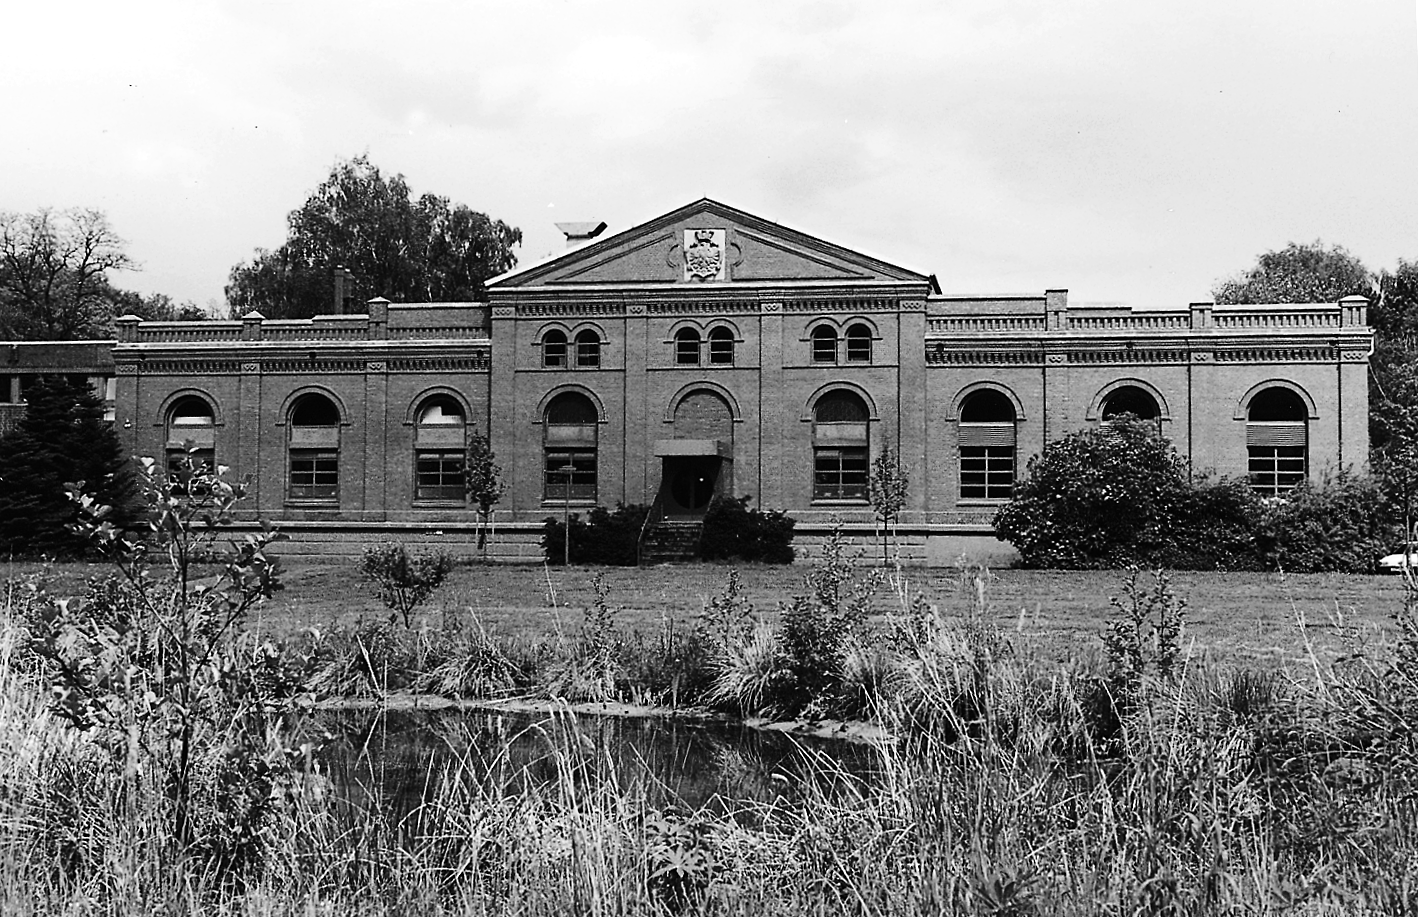 Das Informationszentrum "aqua publik" wird heute von der Dortmunder Energie und Wasserversorgung GmbH (DEW) betrieben. Im Untergeschoss des Gebäudes befindet sich ein im Dauerbetrieb befindliches Wasserwerk aus den 1930er-Jahren.